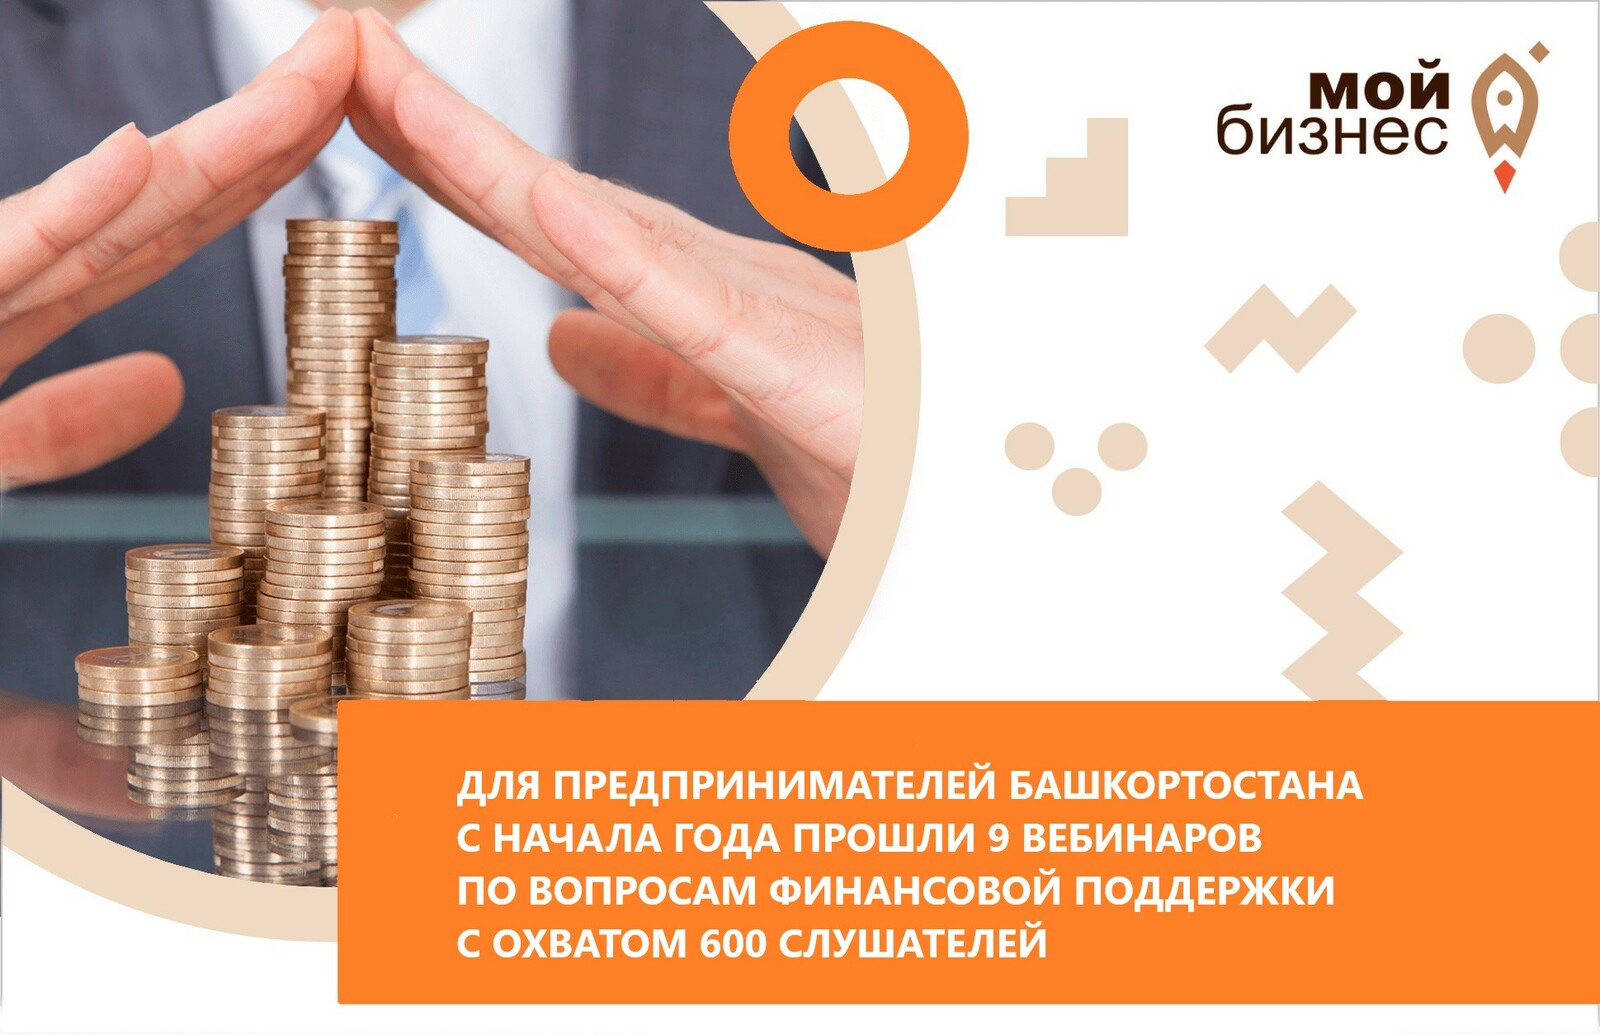 Для предпринимателей Башкортостана с начала года прошли 9 вебинаров по вопросам финансовой поддержки с охватом 600 слушателей